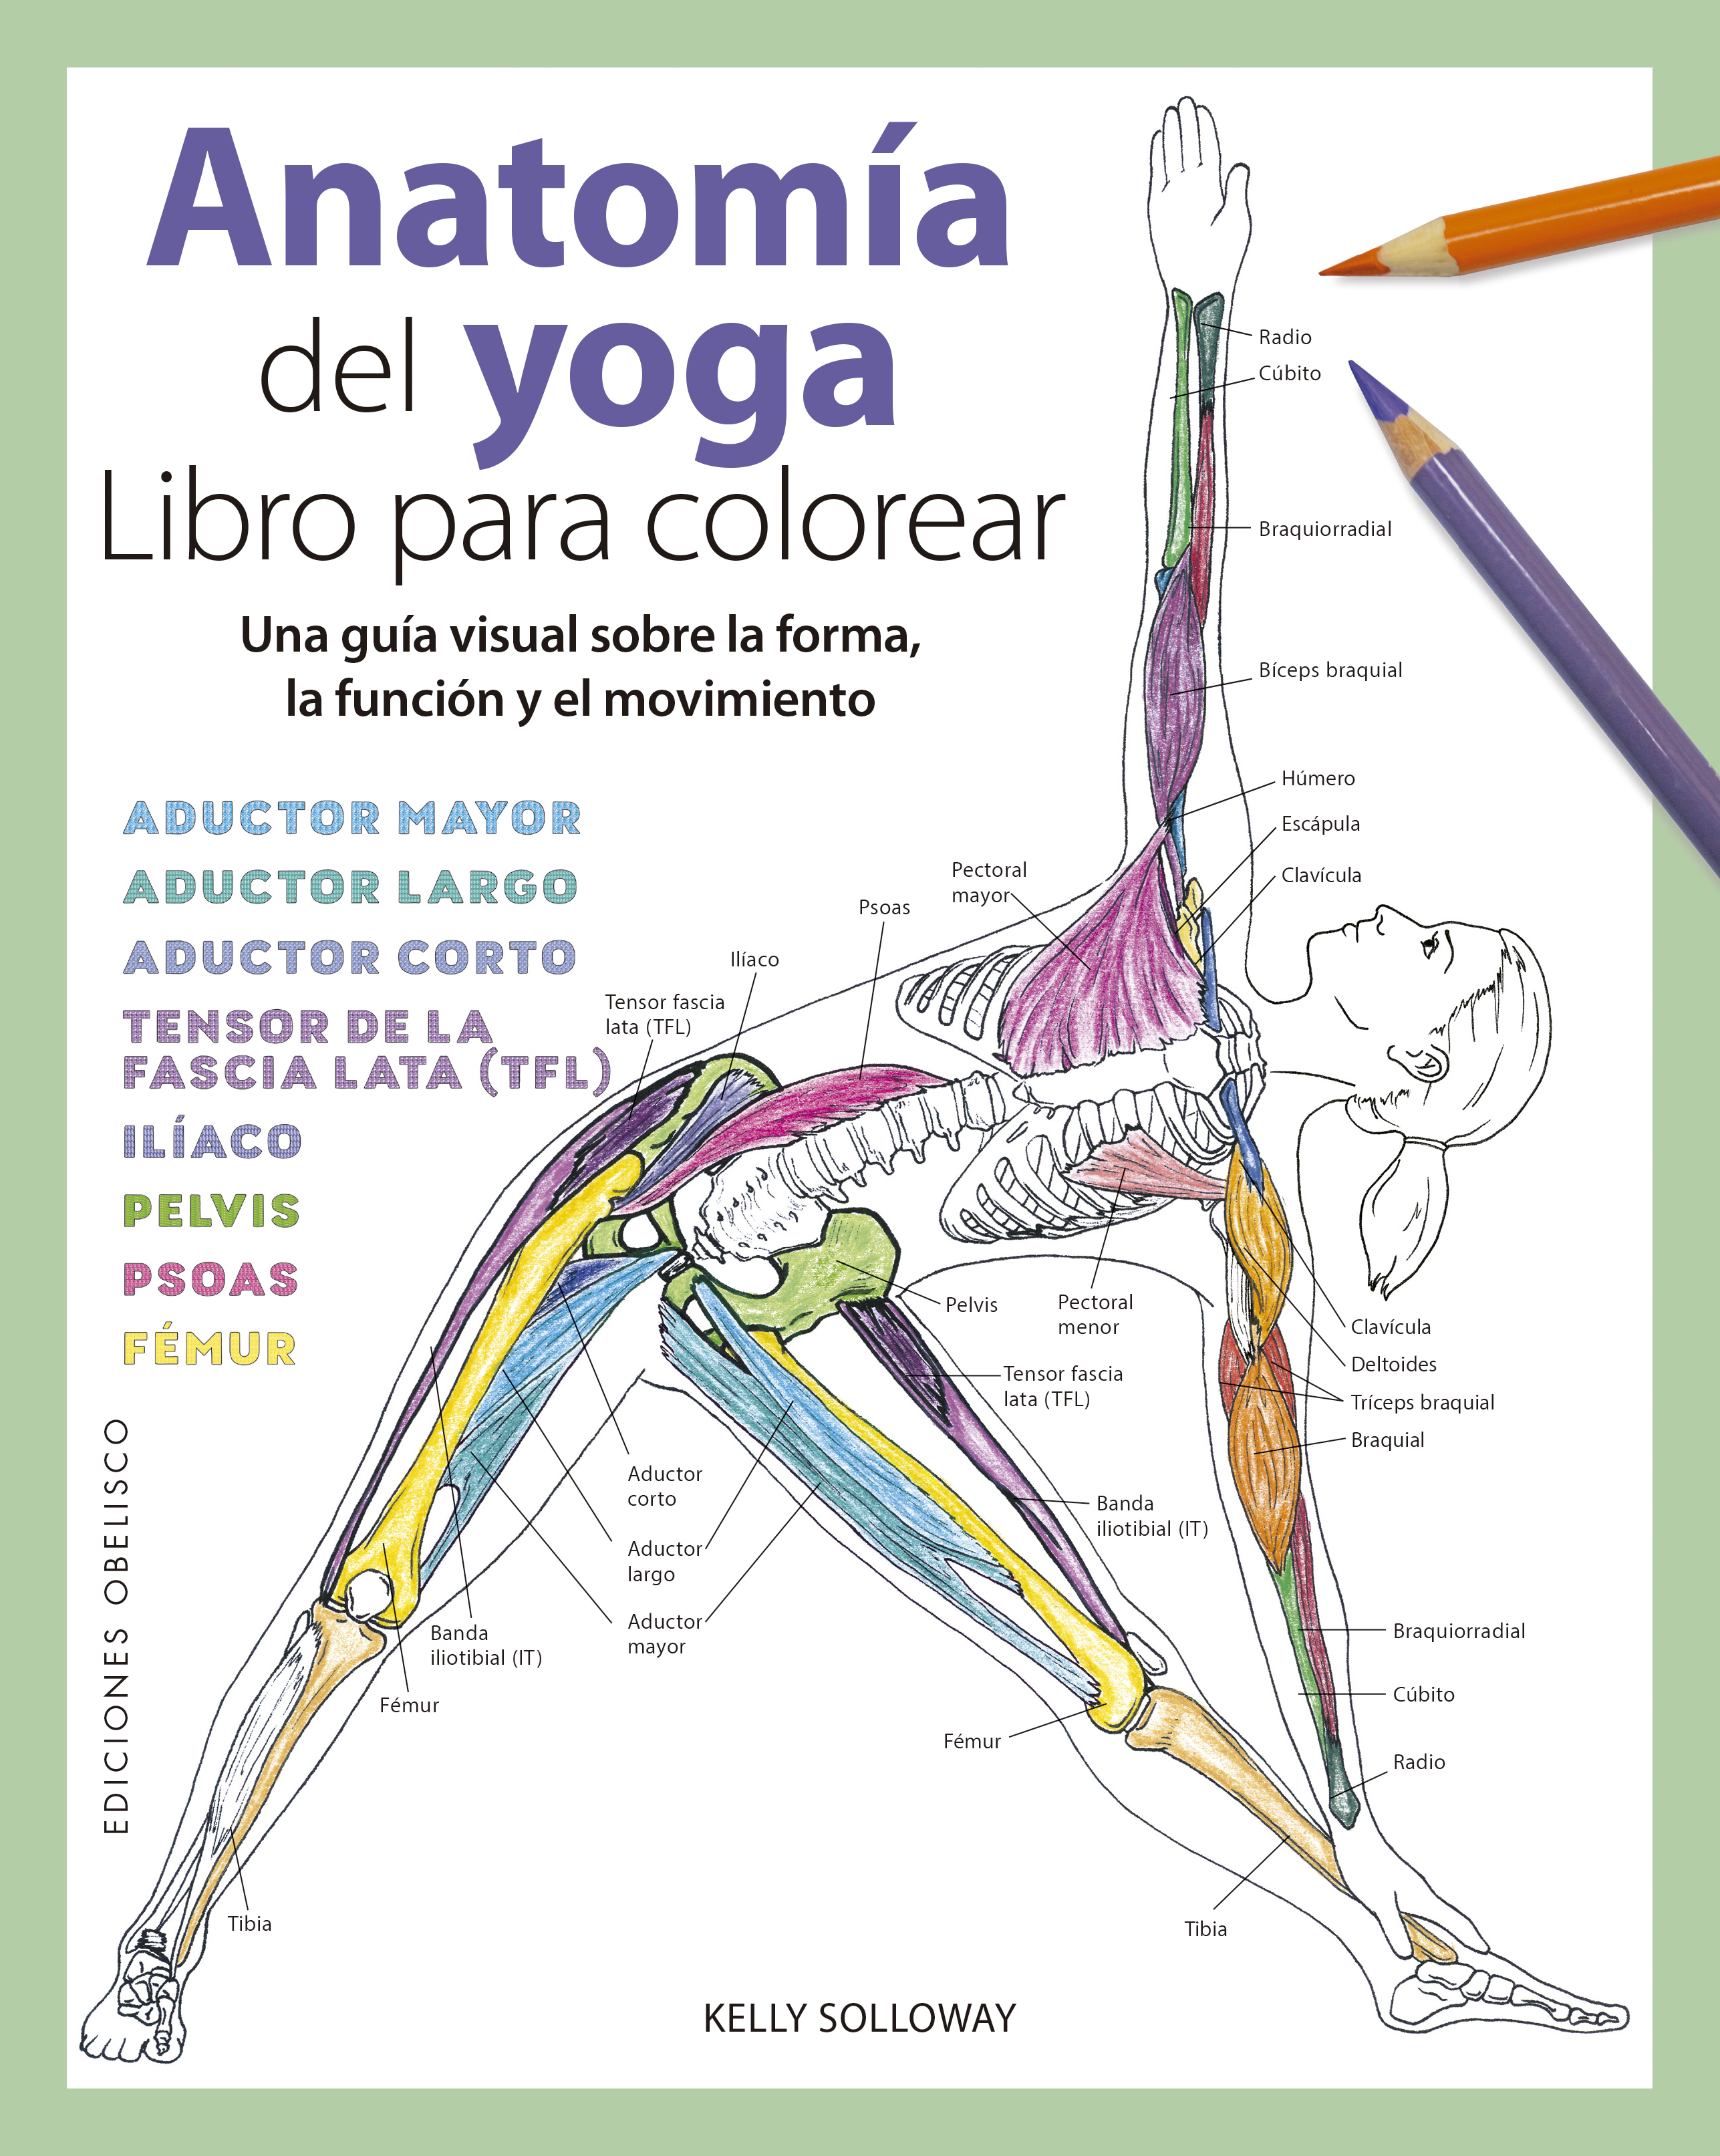 Anatomia del yoga_Libro para colorear.jp